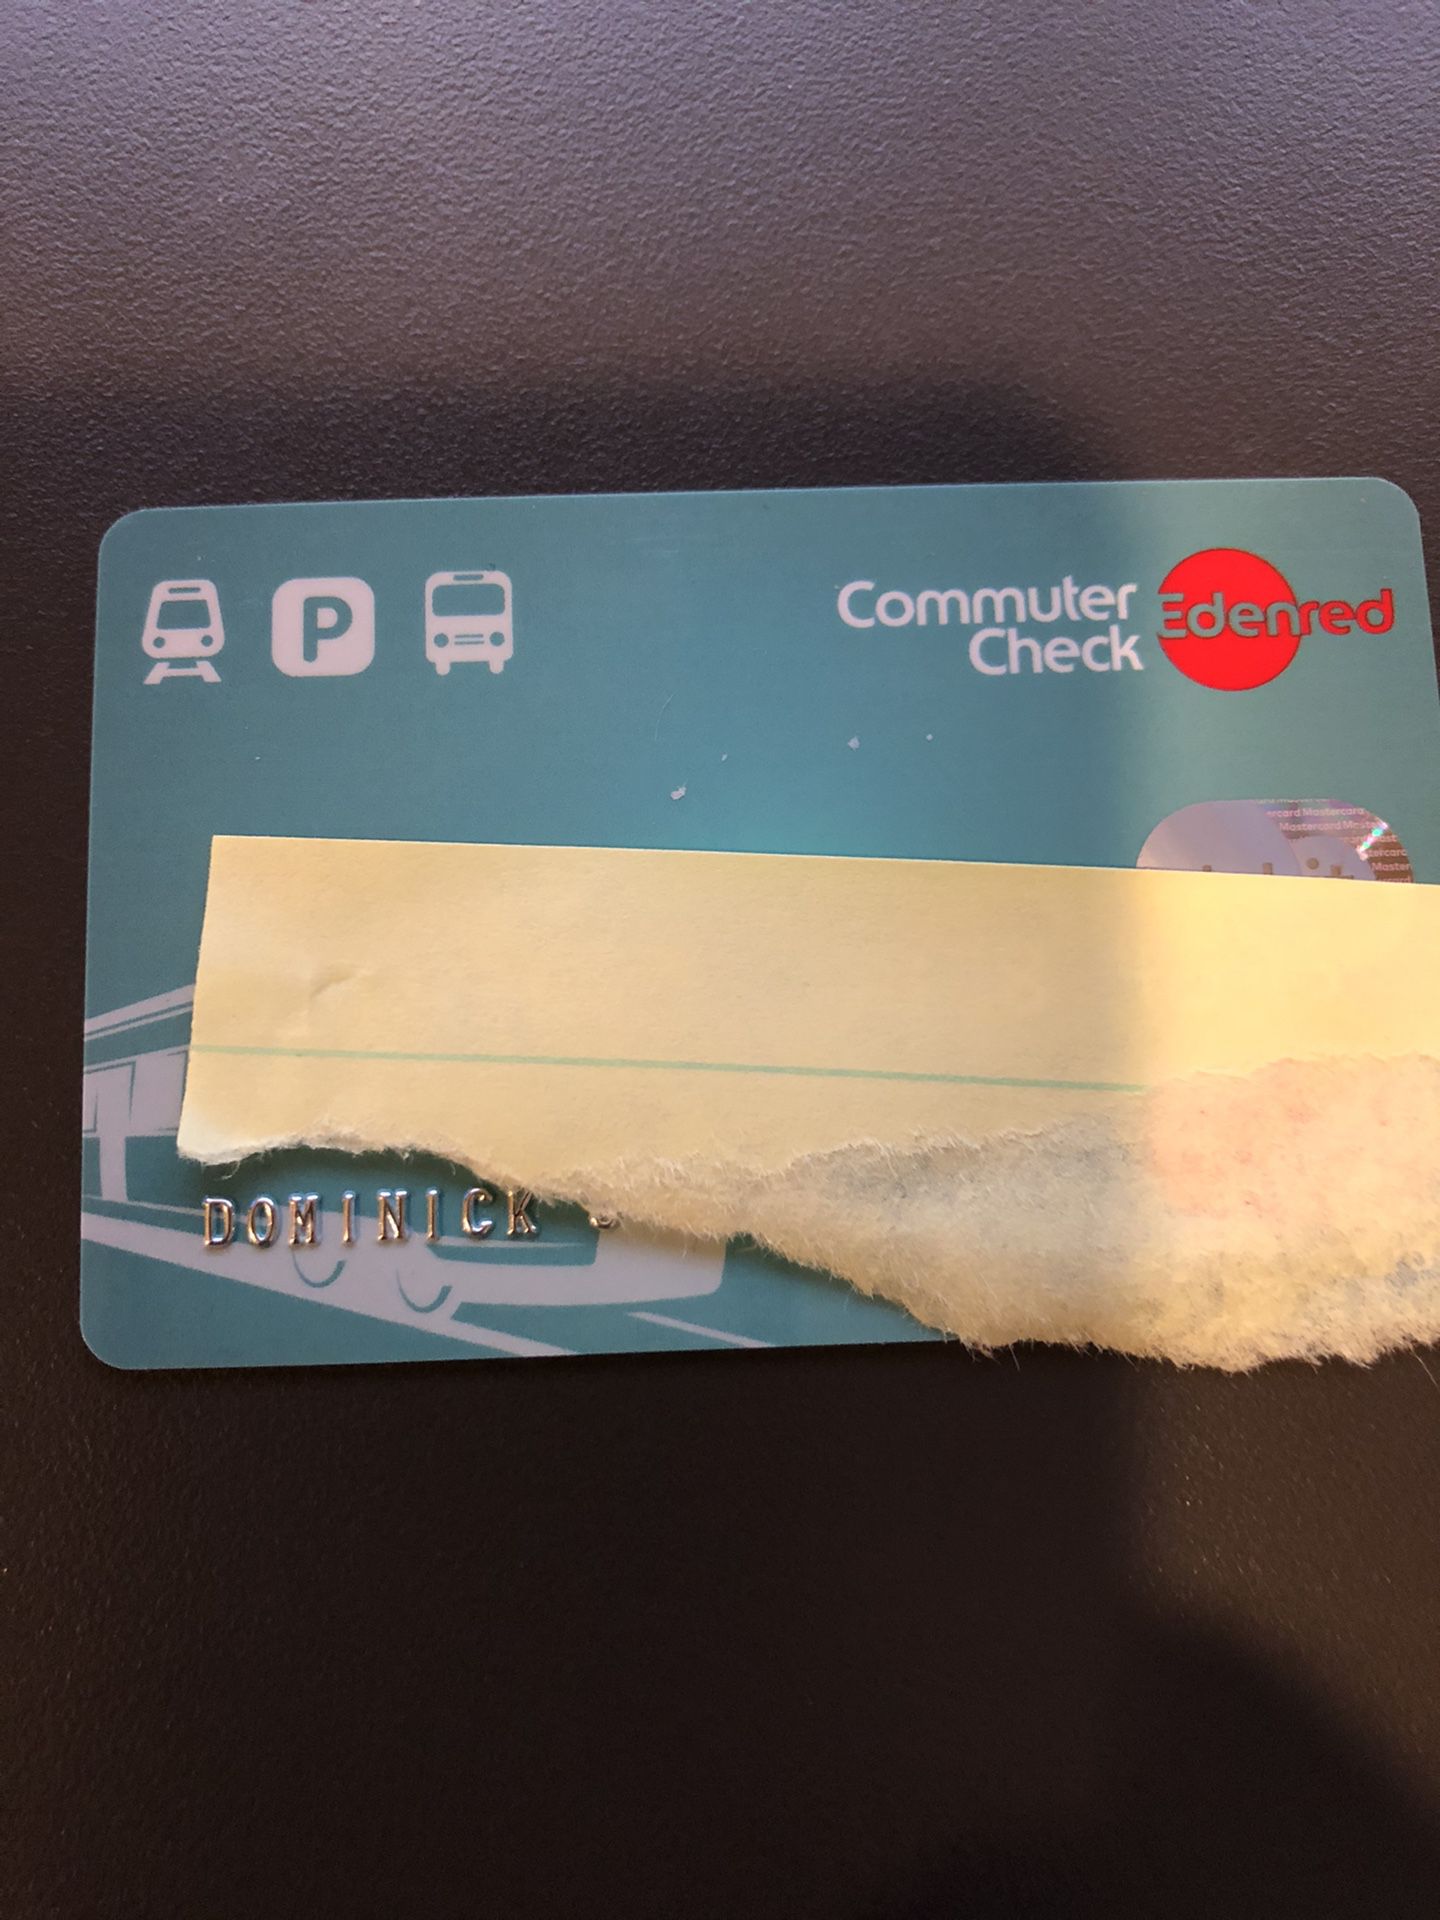 Commuter card